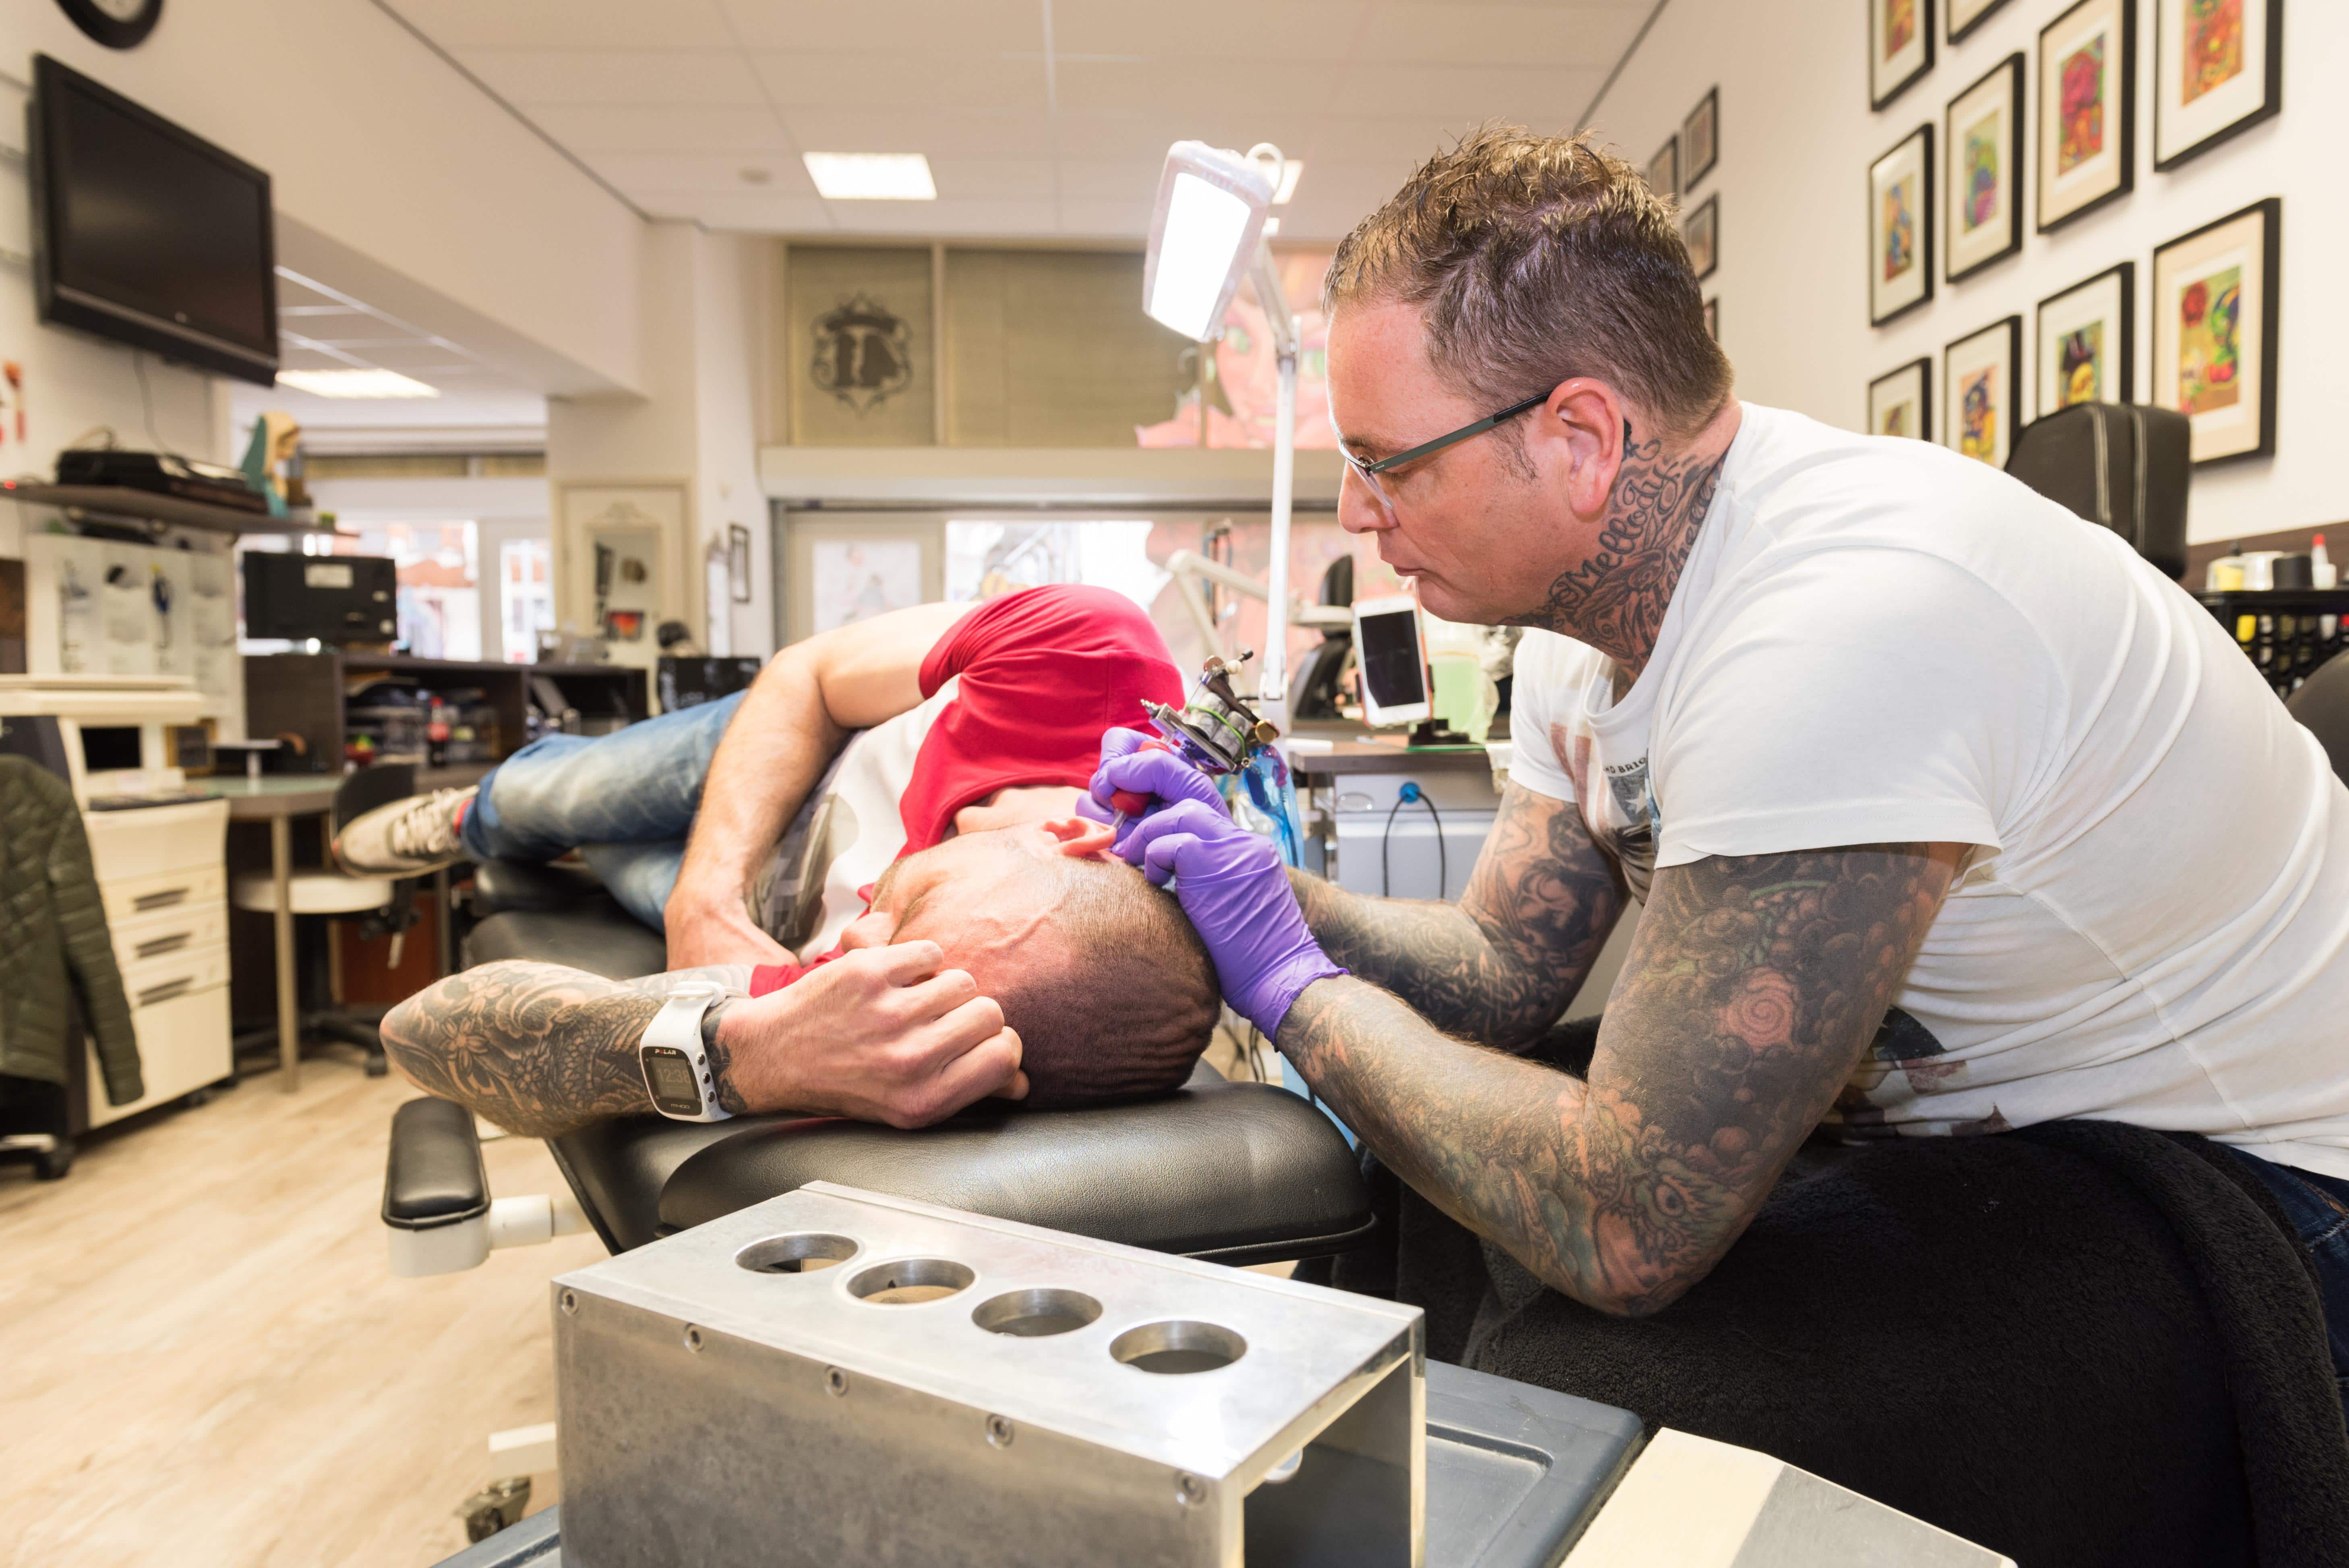 Tattoo's & piercing - In Dordrecht